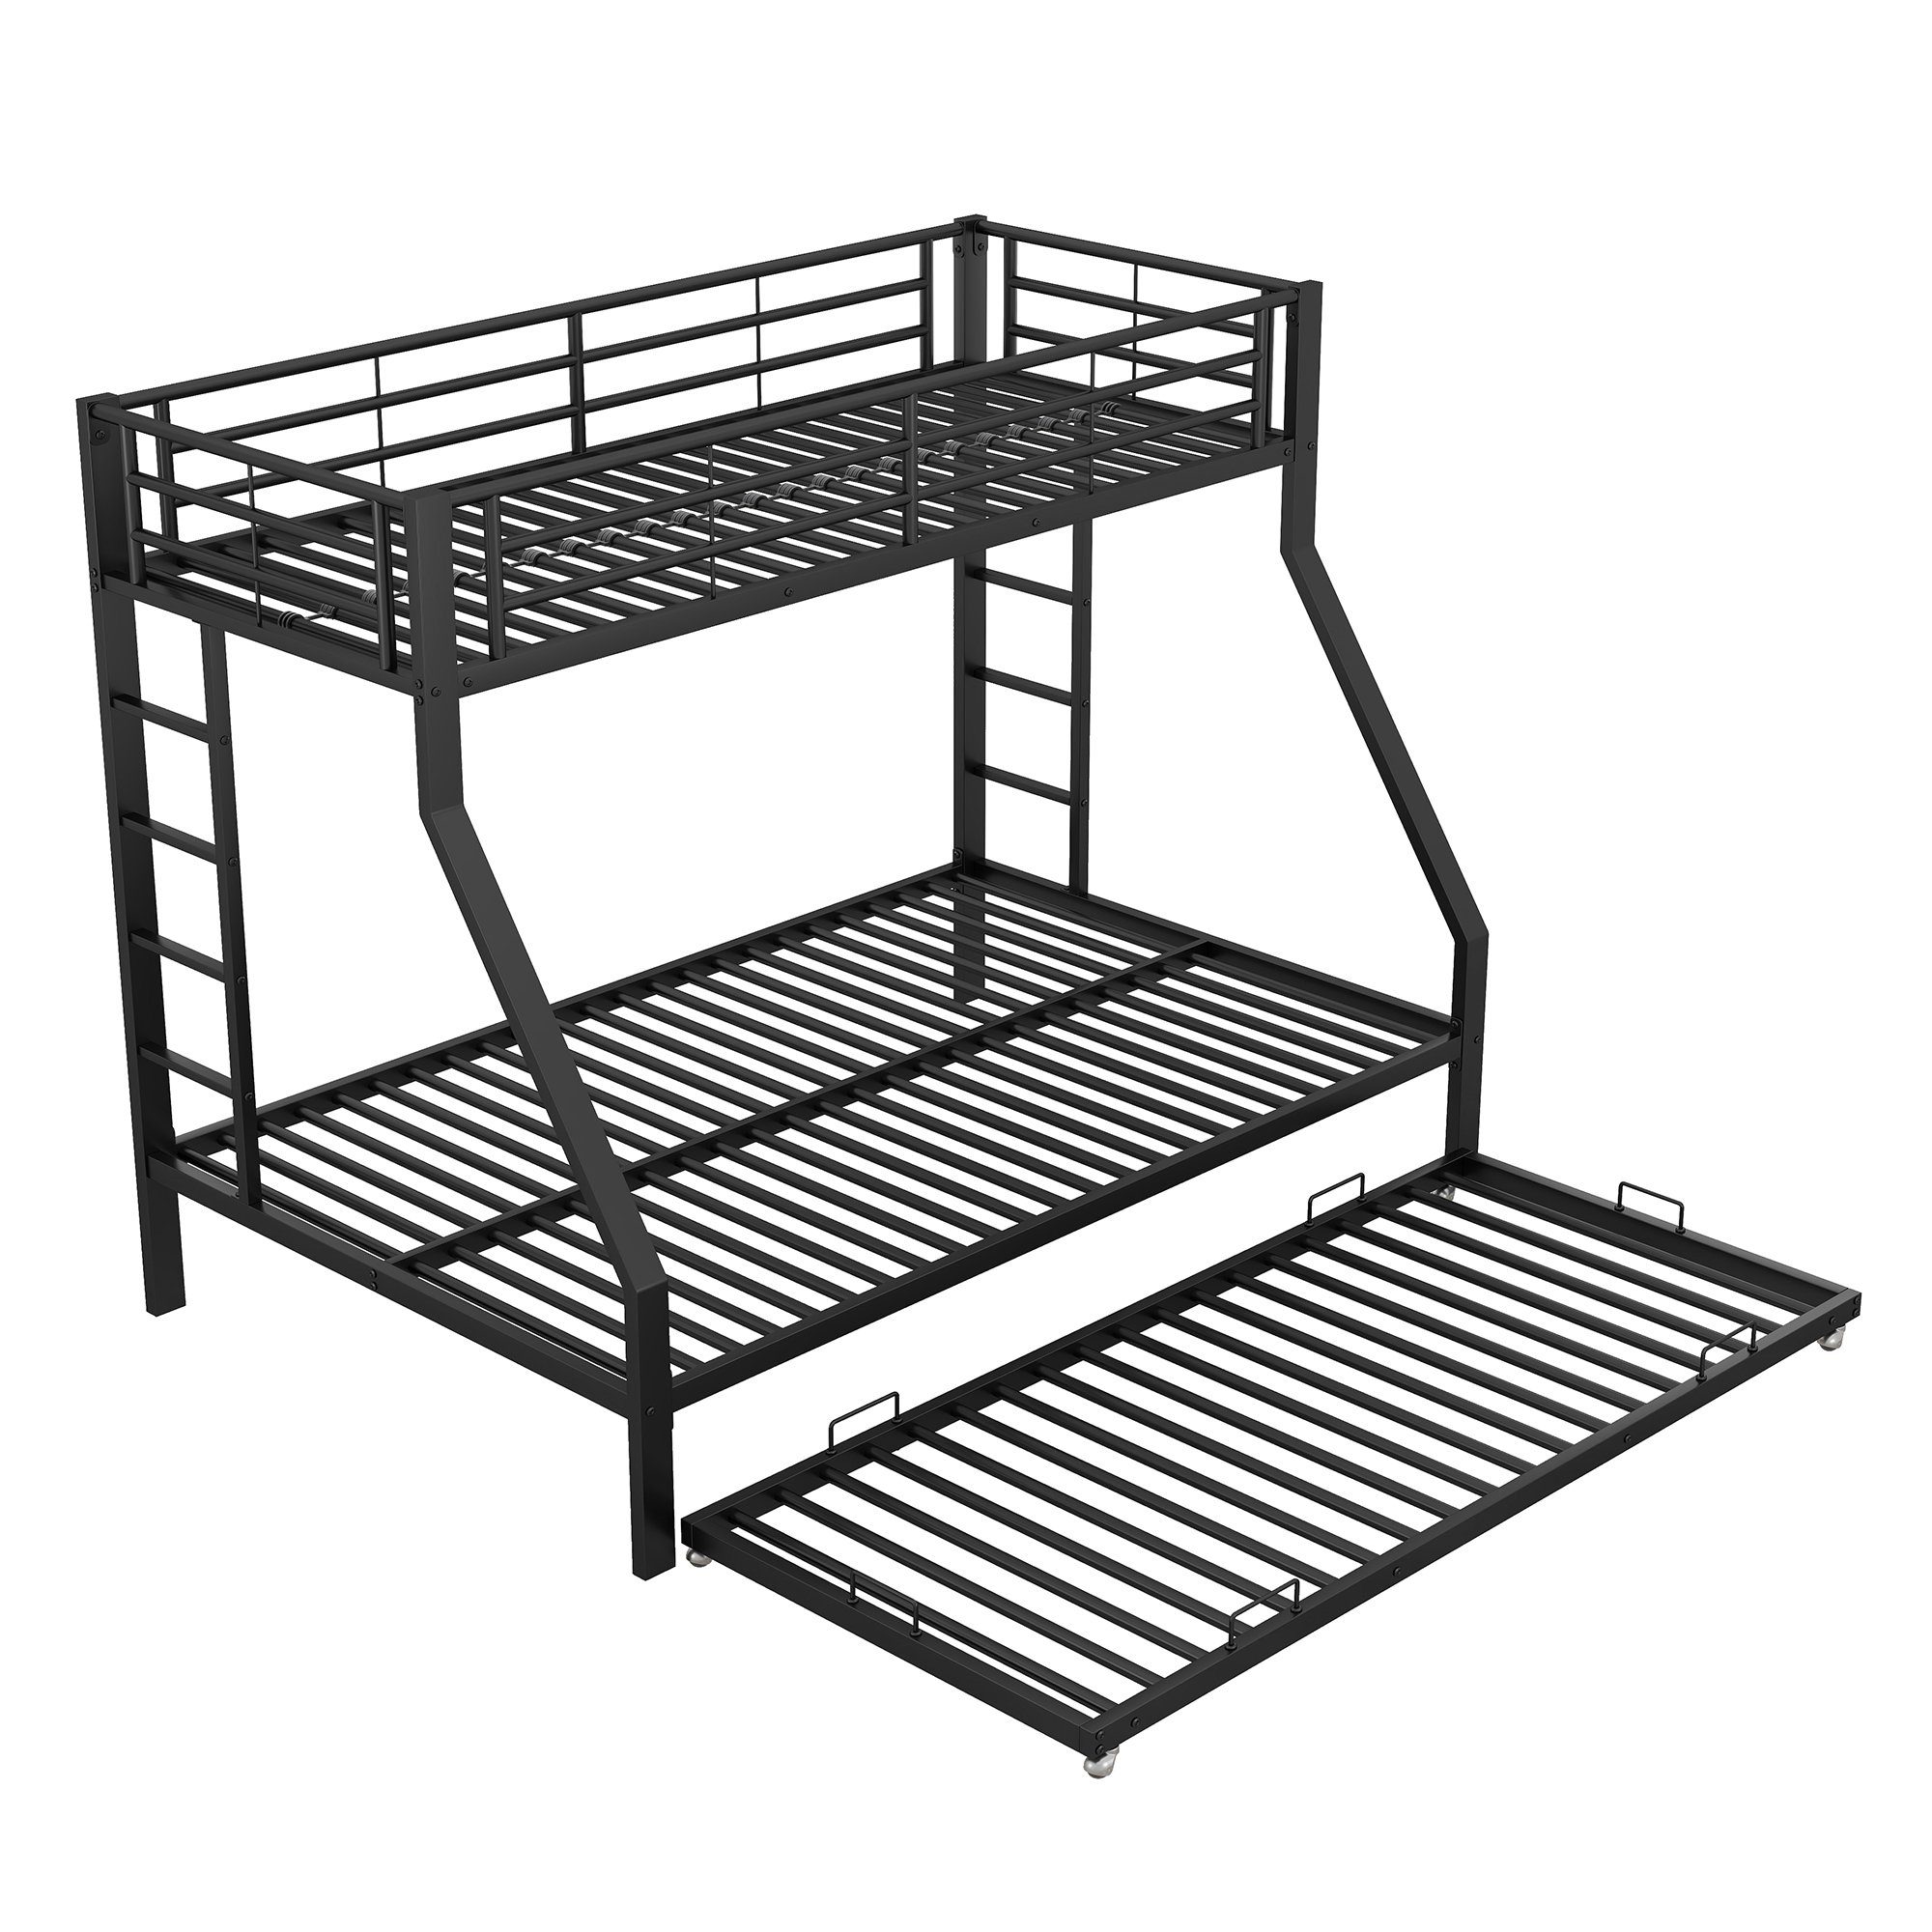 Flieks Etagenbett, 90x200cm/140x200cm/90x190cm schwarz mit Metallbett ausziehbarem Bett